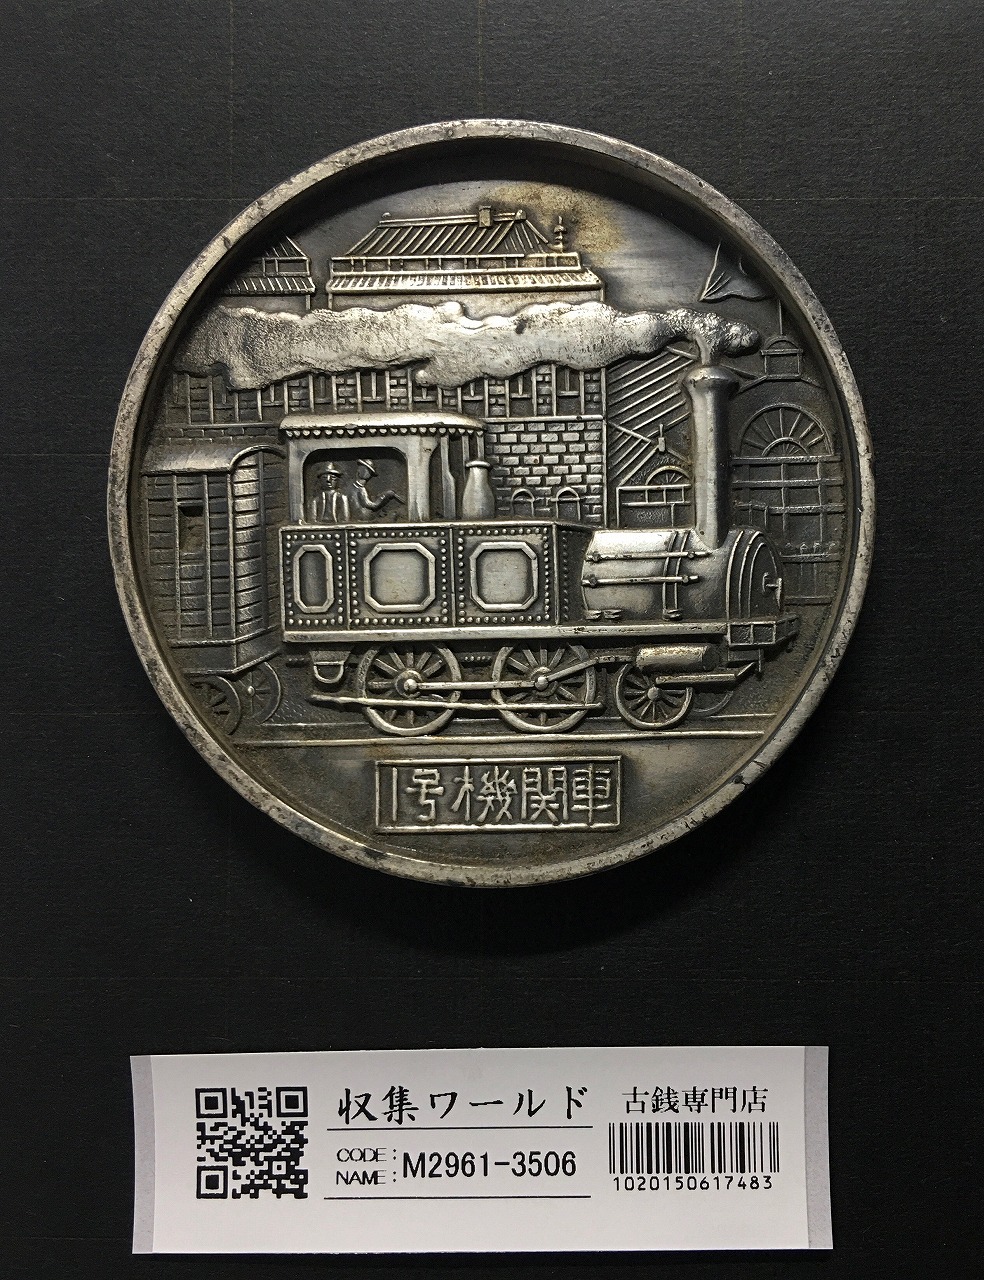 国鉄 1号機関車/鉄道唱歌/記念大型メダル φ69.9mm 1972年(S47)年 美品